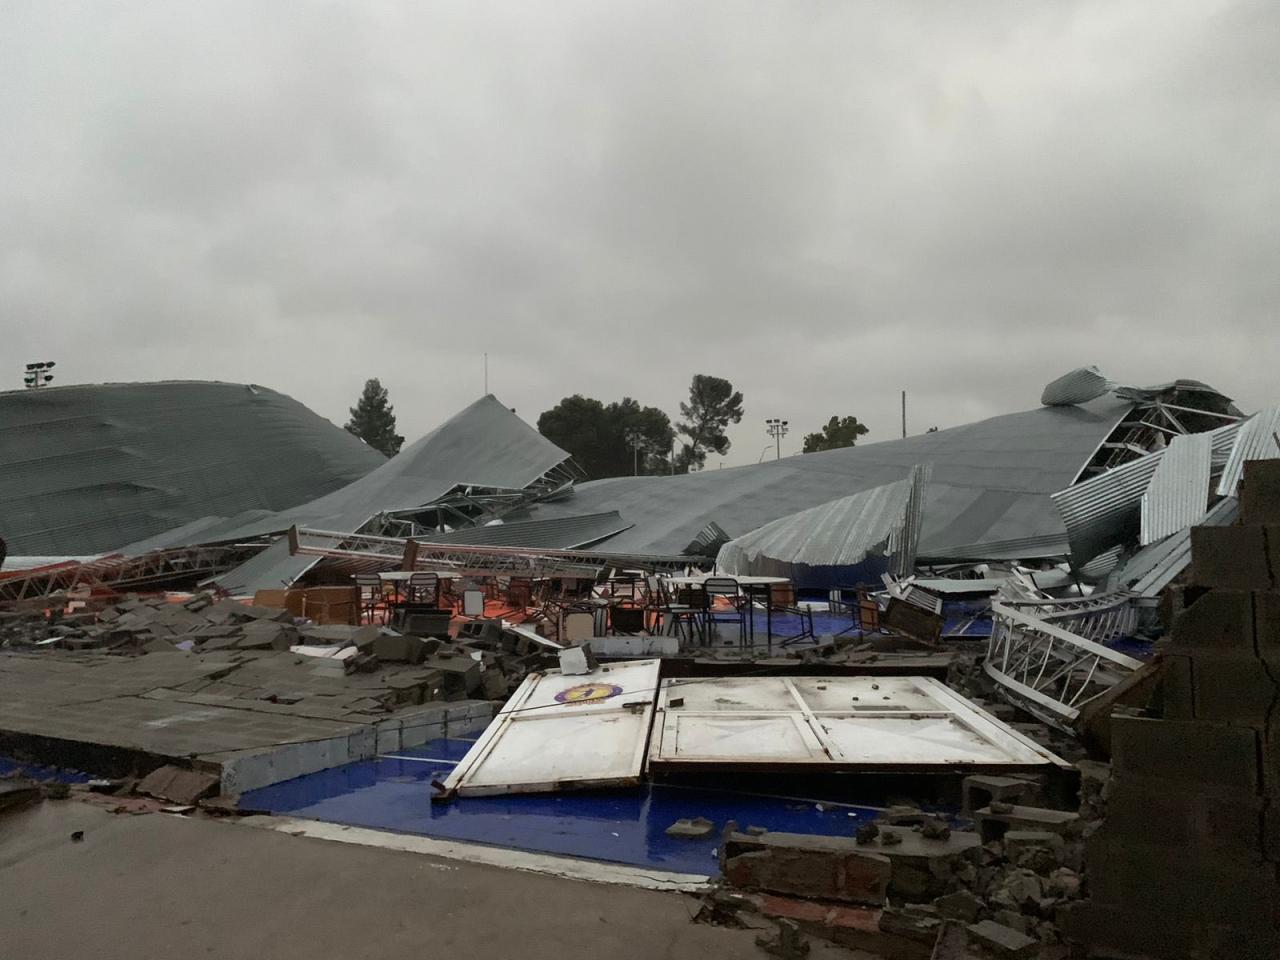 Reporte del clima.  Tragedia en Argentina, una tormenta y vientos de 140 km/hora provocaron el derrumbe del techo de una instalación deportiva.  Al menos 13 víctimas